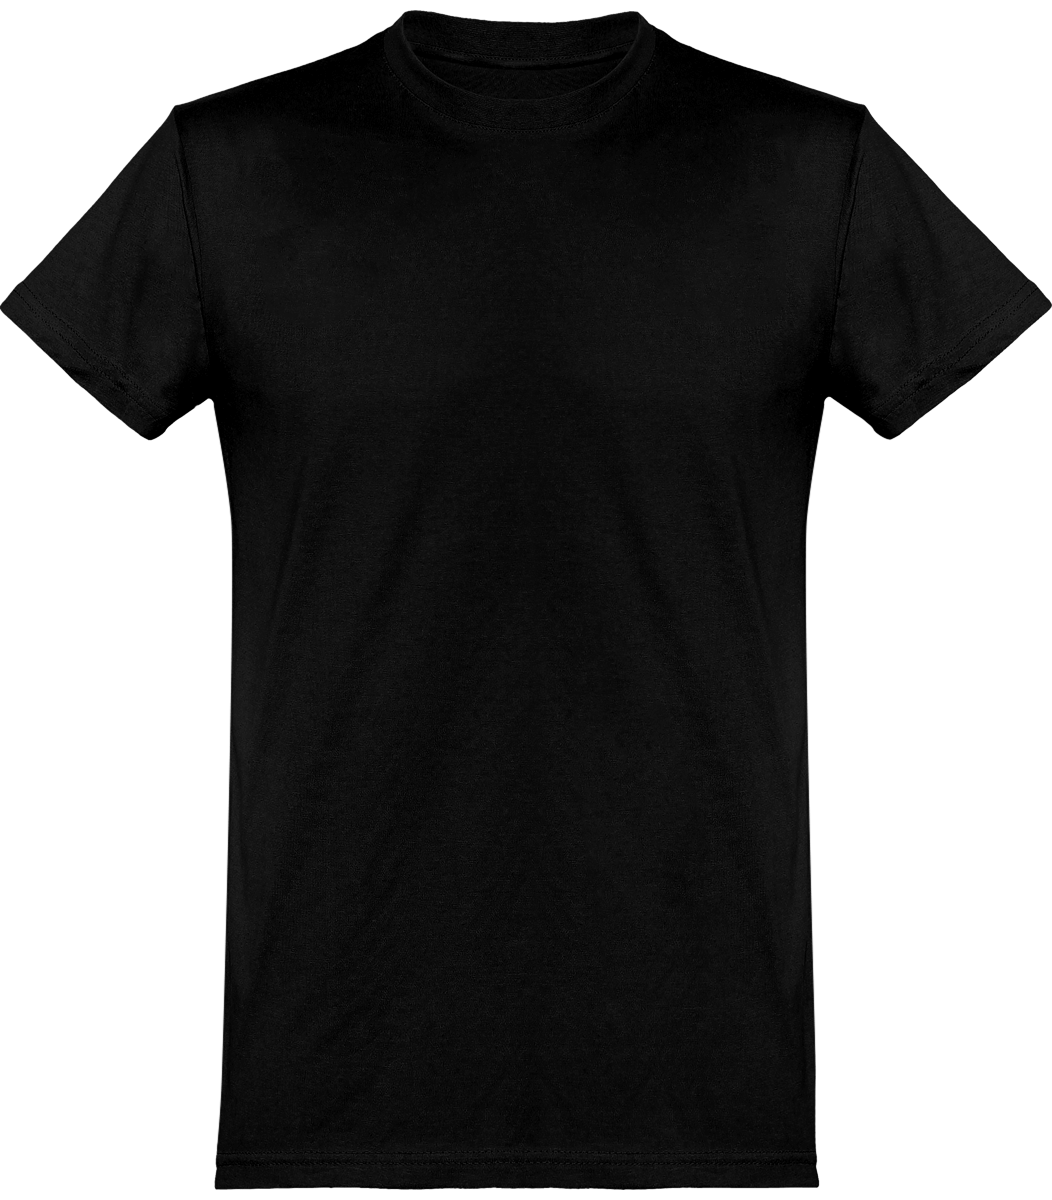 Tee-Shirt Homme Coupe Basique 100% Coton À Personnaliser Black